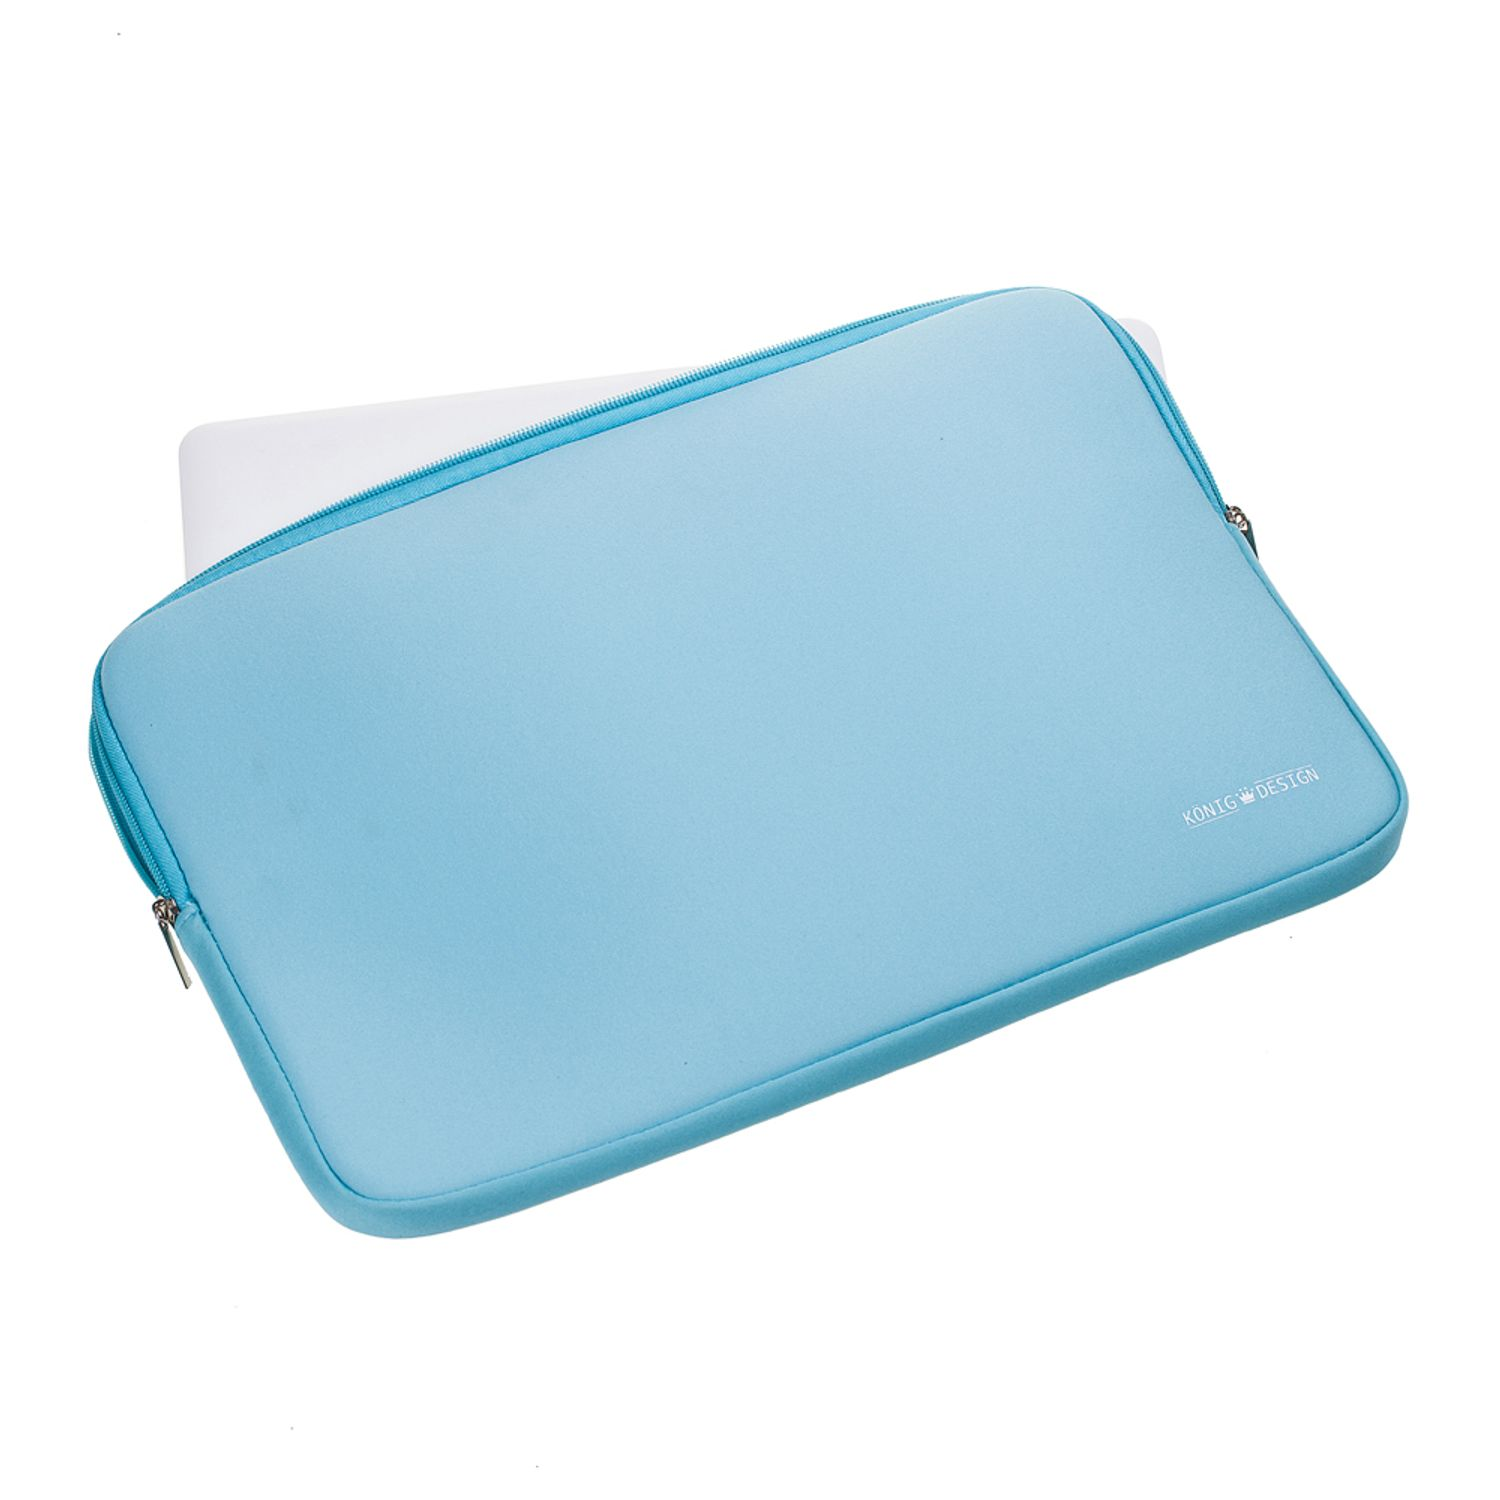 Neoprene, Blau Samsung Apple Lenovo DESIGN Universal KÖNIG Notebooktasche Tasche Laptop Sleeve für Laptoptasche